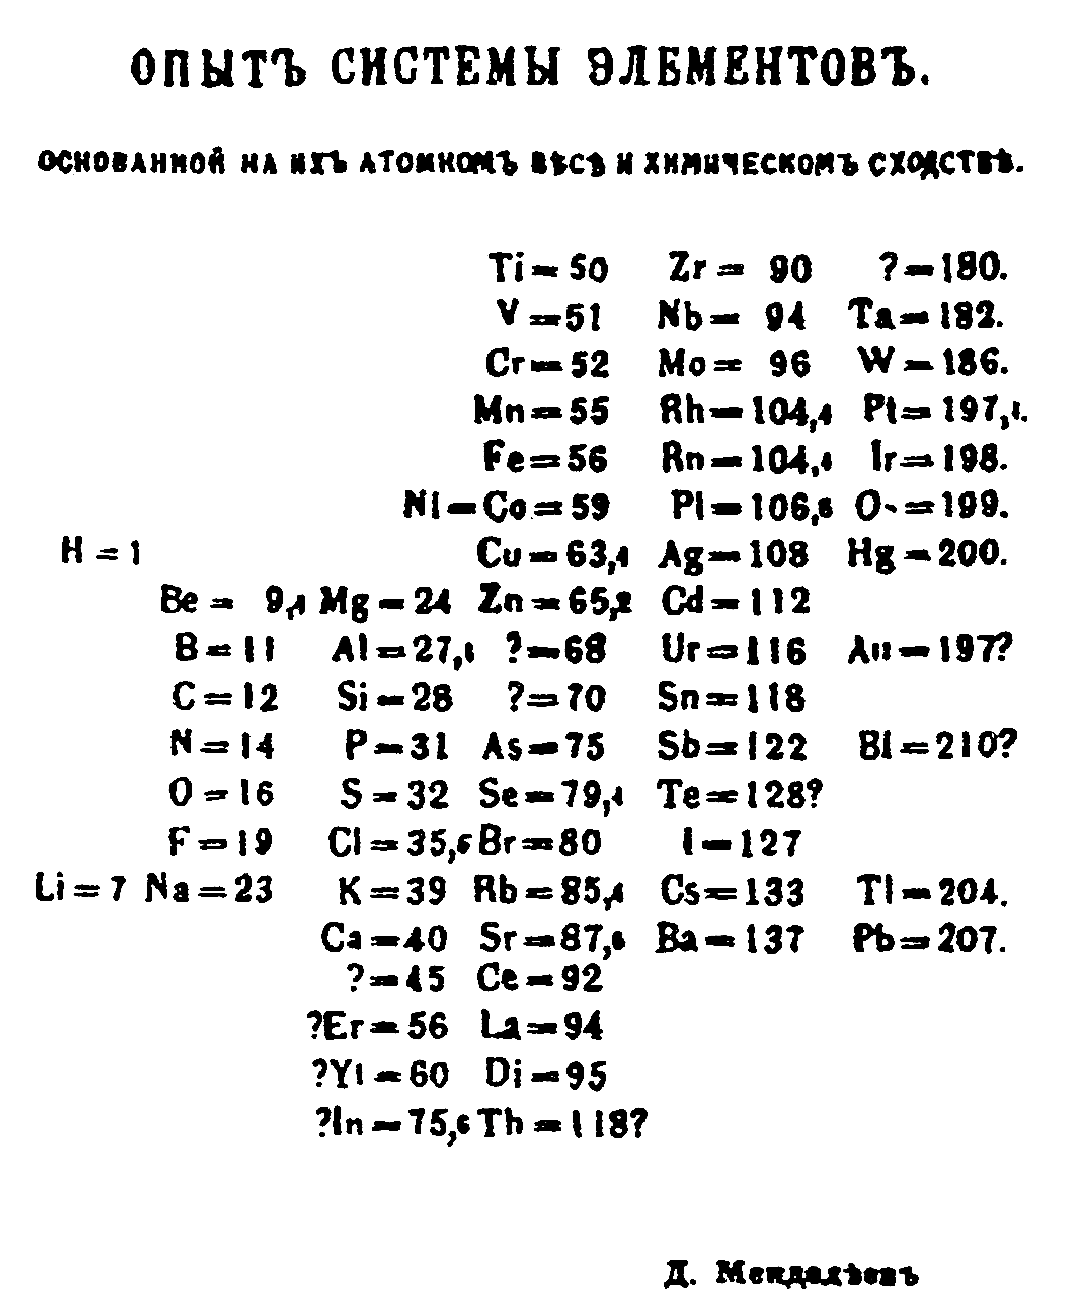 tabla periodica 5